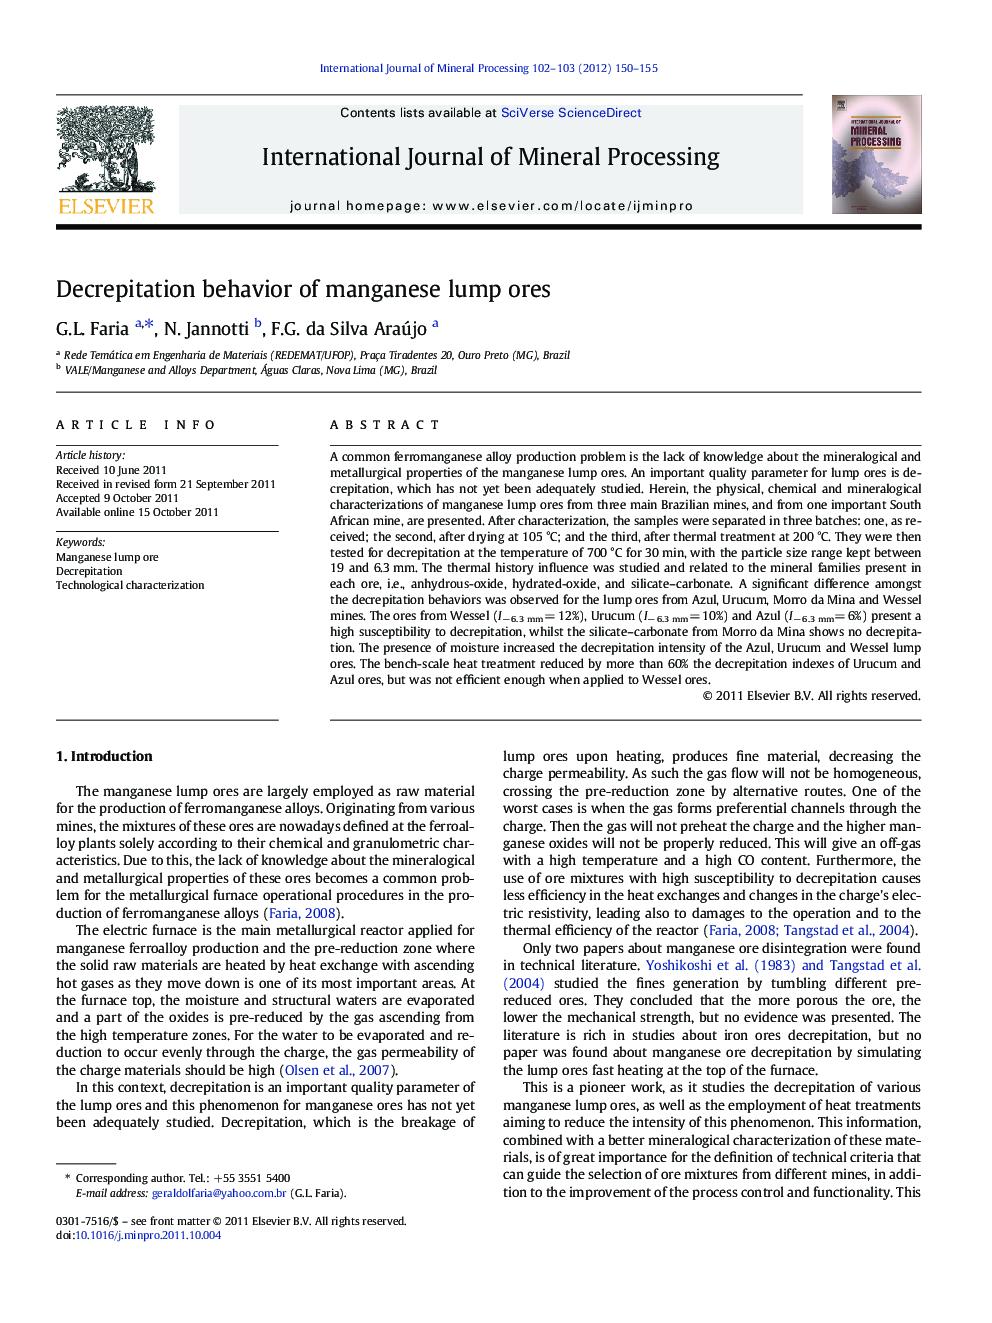 Decrepitation behavior of manganese lump ores